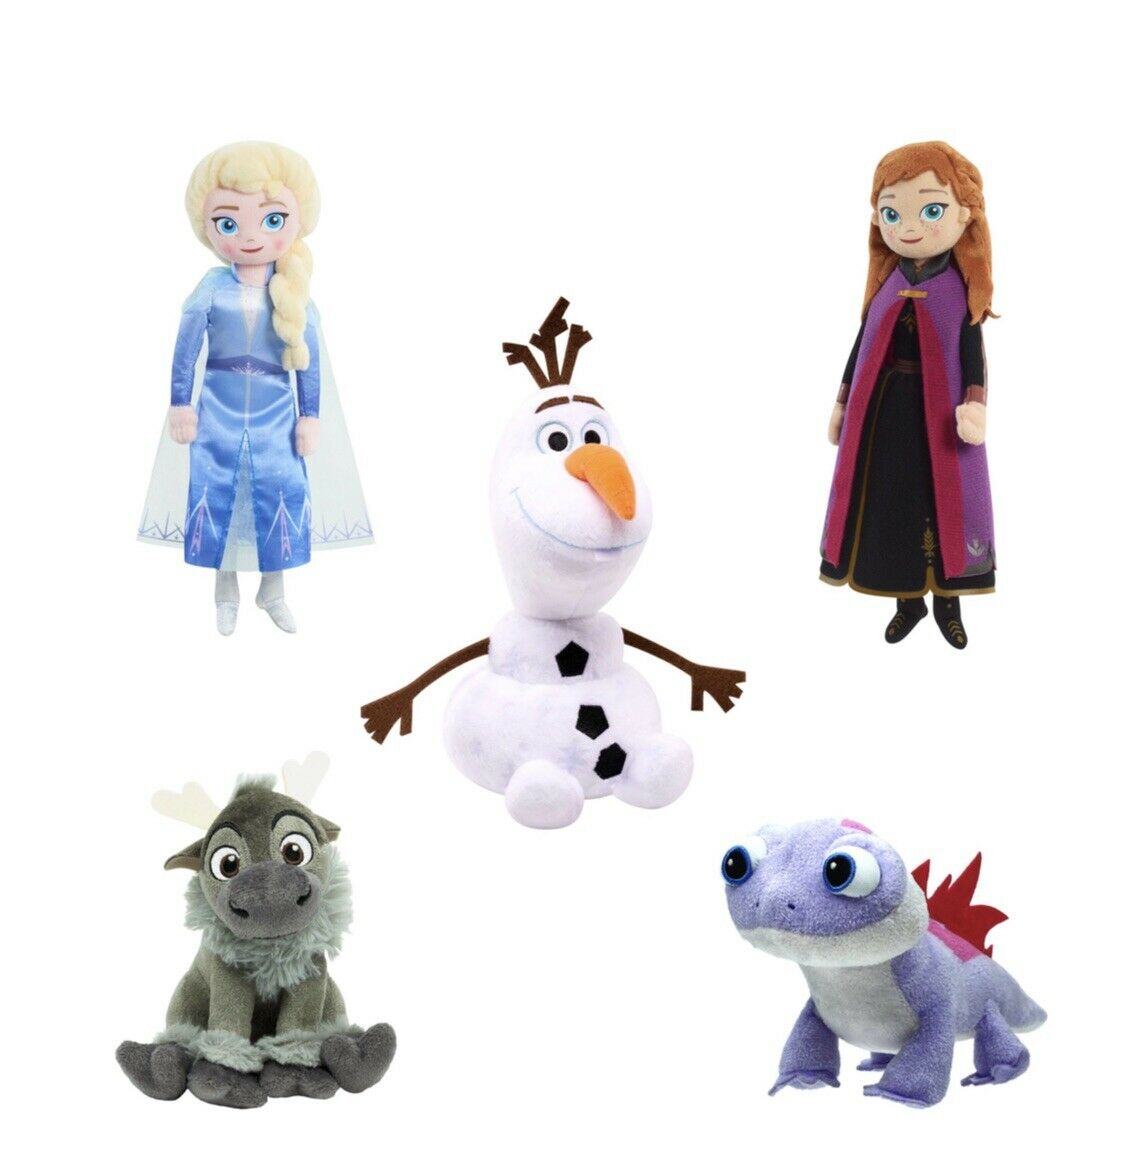 Disney’s Frozen 2 Plush Collector Set, 5-pieces!